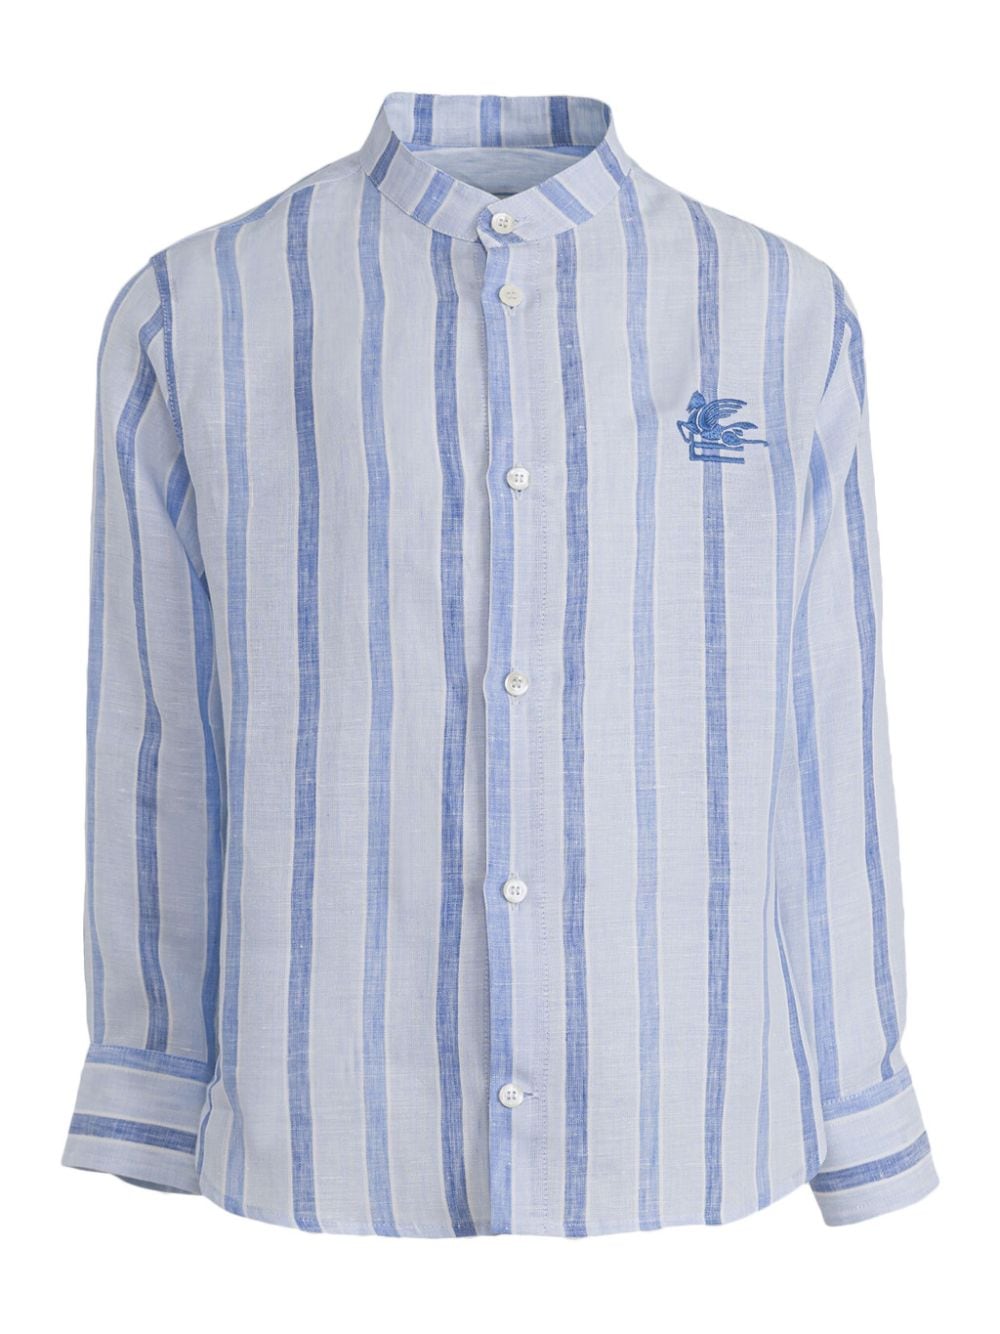 ETRO KIDS striped linen shirt - Blue von ETRO KIDS